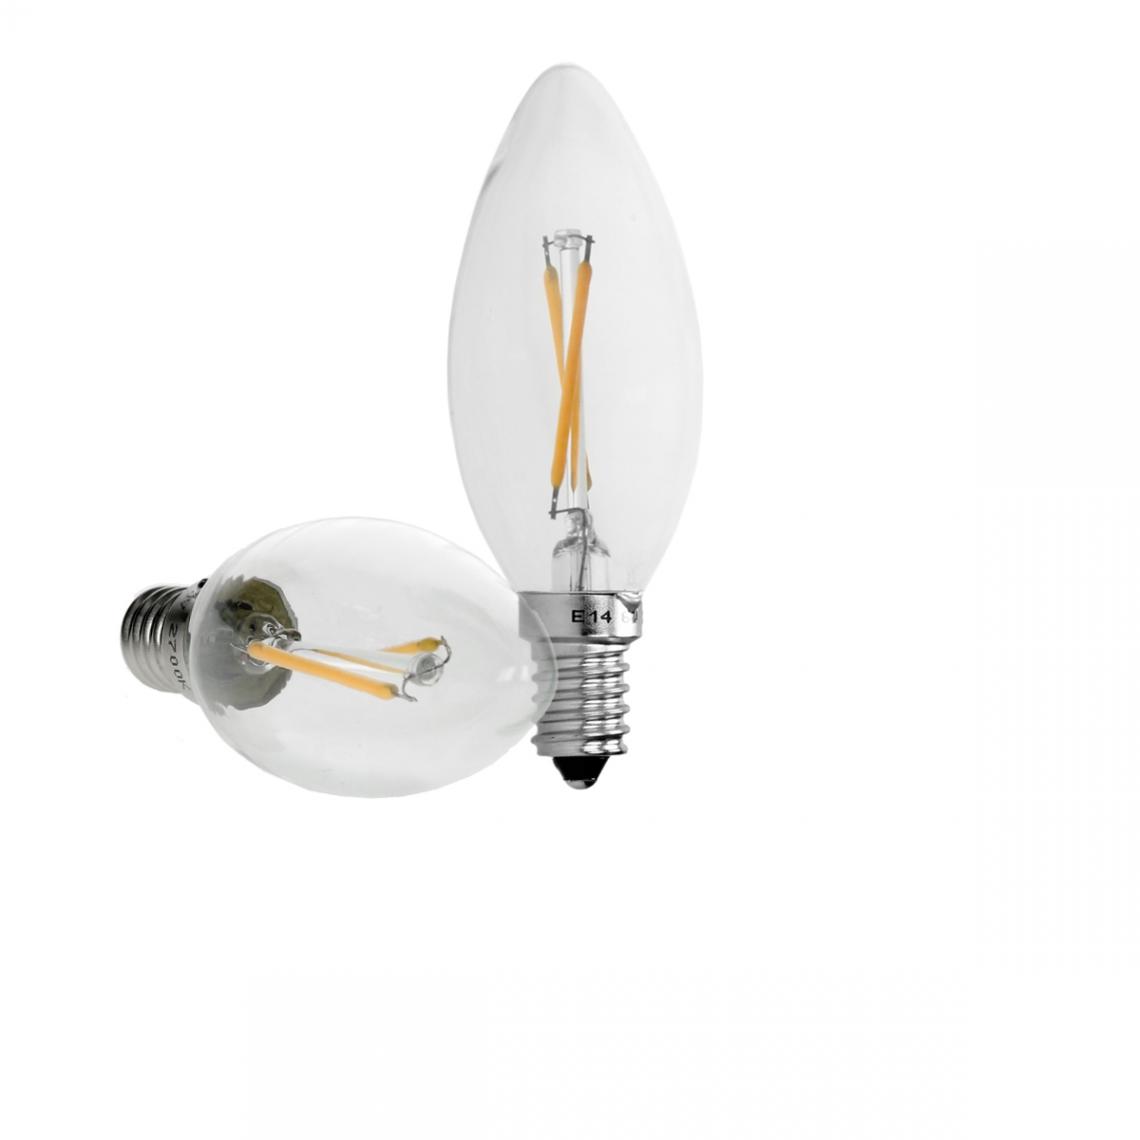 Ecd Germany - ECD Germany 5 x LED Filament de la bougie E14 2W 204 Lumens Angle de 120 ° 220-240 V courant alternatif reste caché et remplace 15W lampe à incandescence ampoule blanc chaud - Ampoules LED